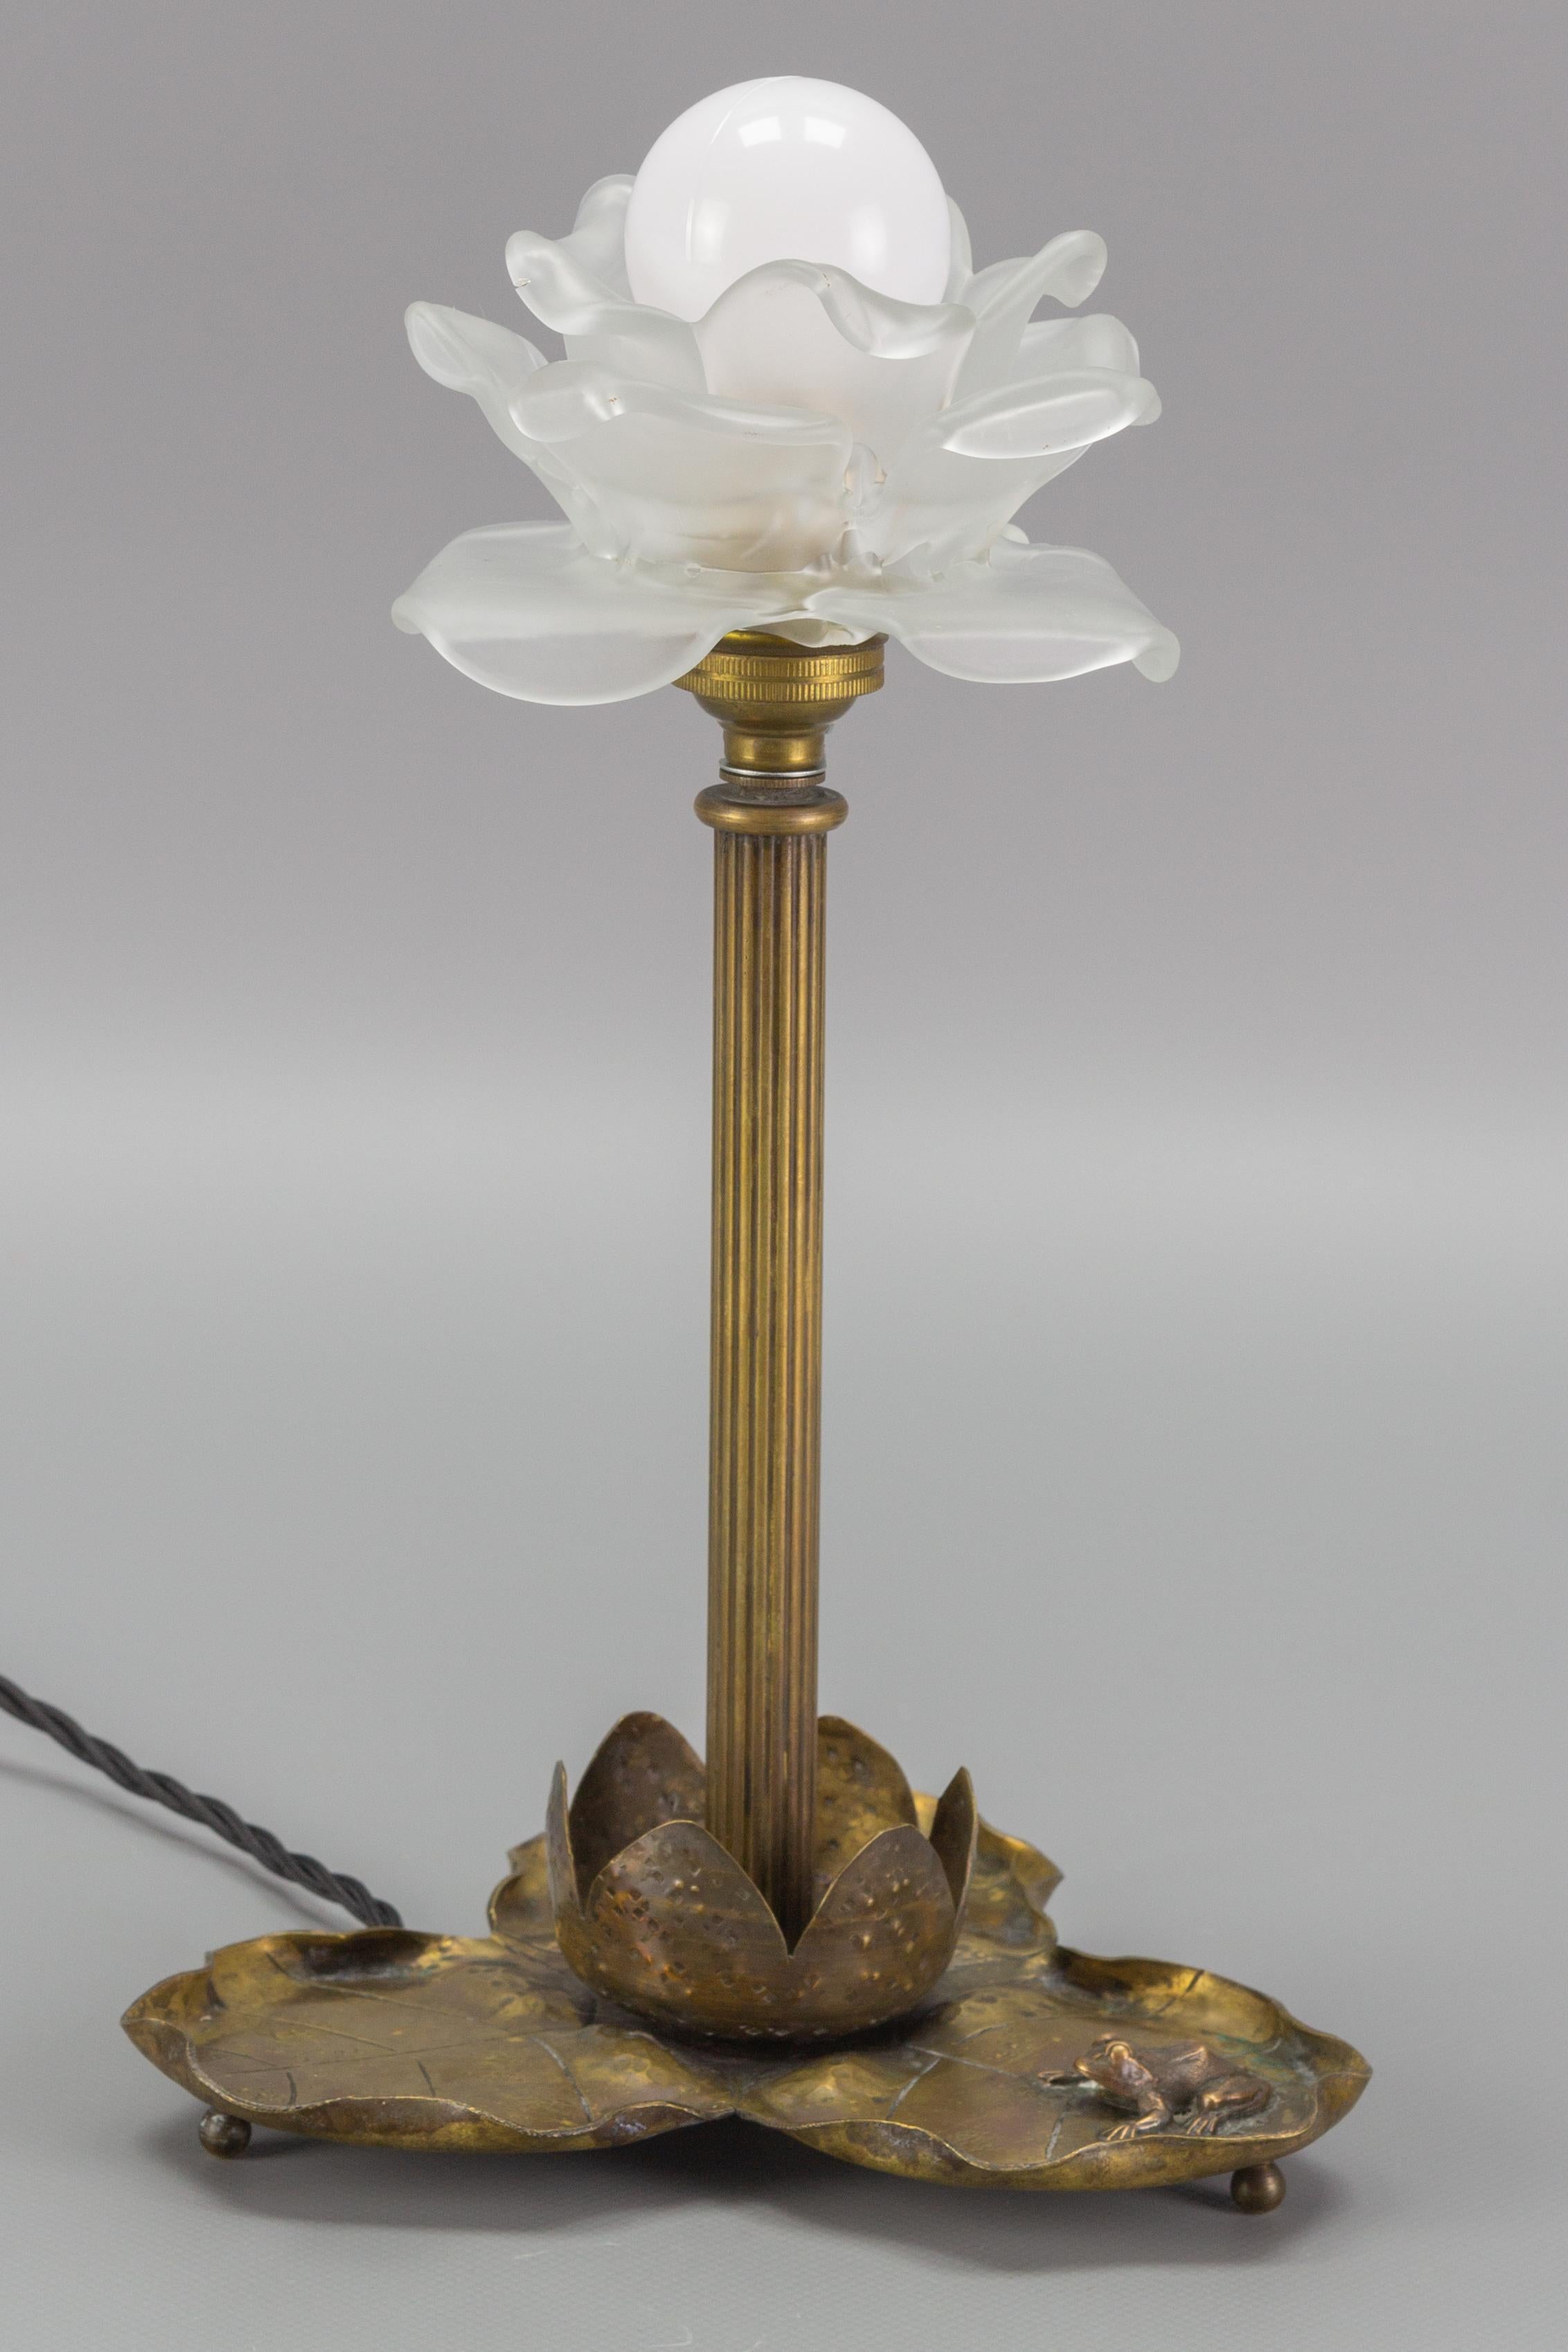 Schöne Jugendstil-Tischlampe aus Messing in Form einer Seerose mit einer Froschfigur auf dem Sockel. Weißer blumenförmiger Lampenschirm aus Milchglas.
Eine Fassung für eine Glühbirne der Größe B22. 
In die USA wird die Lampe mit einem Adapter für